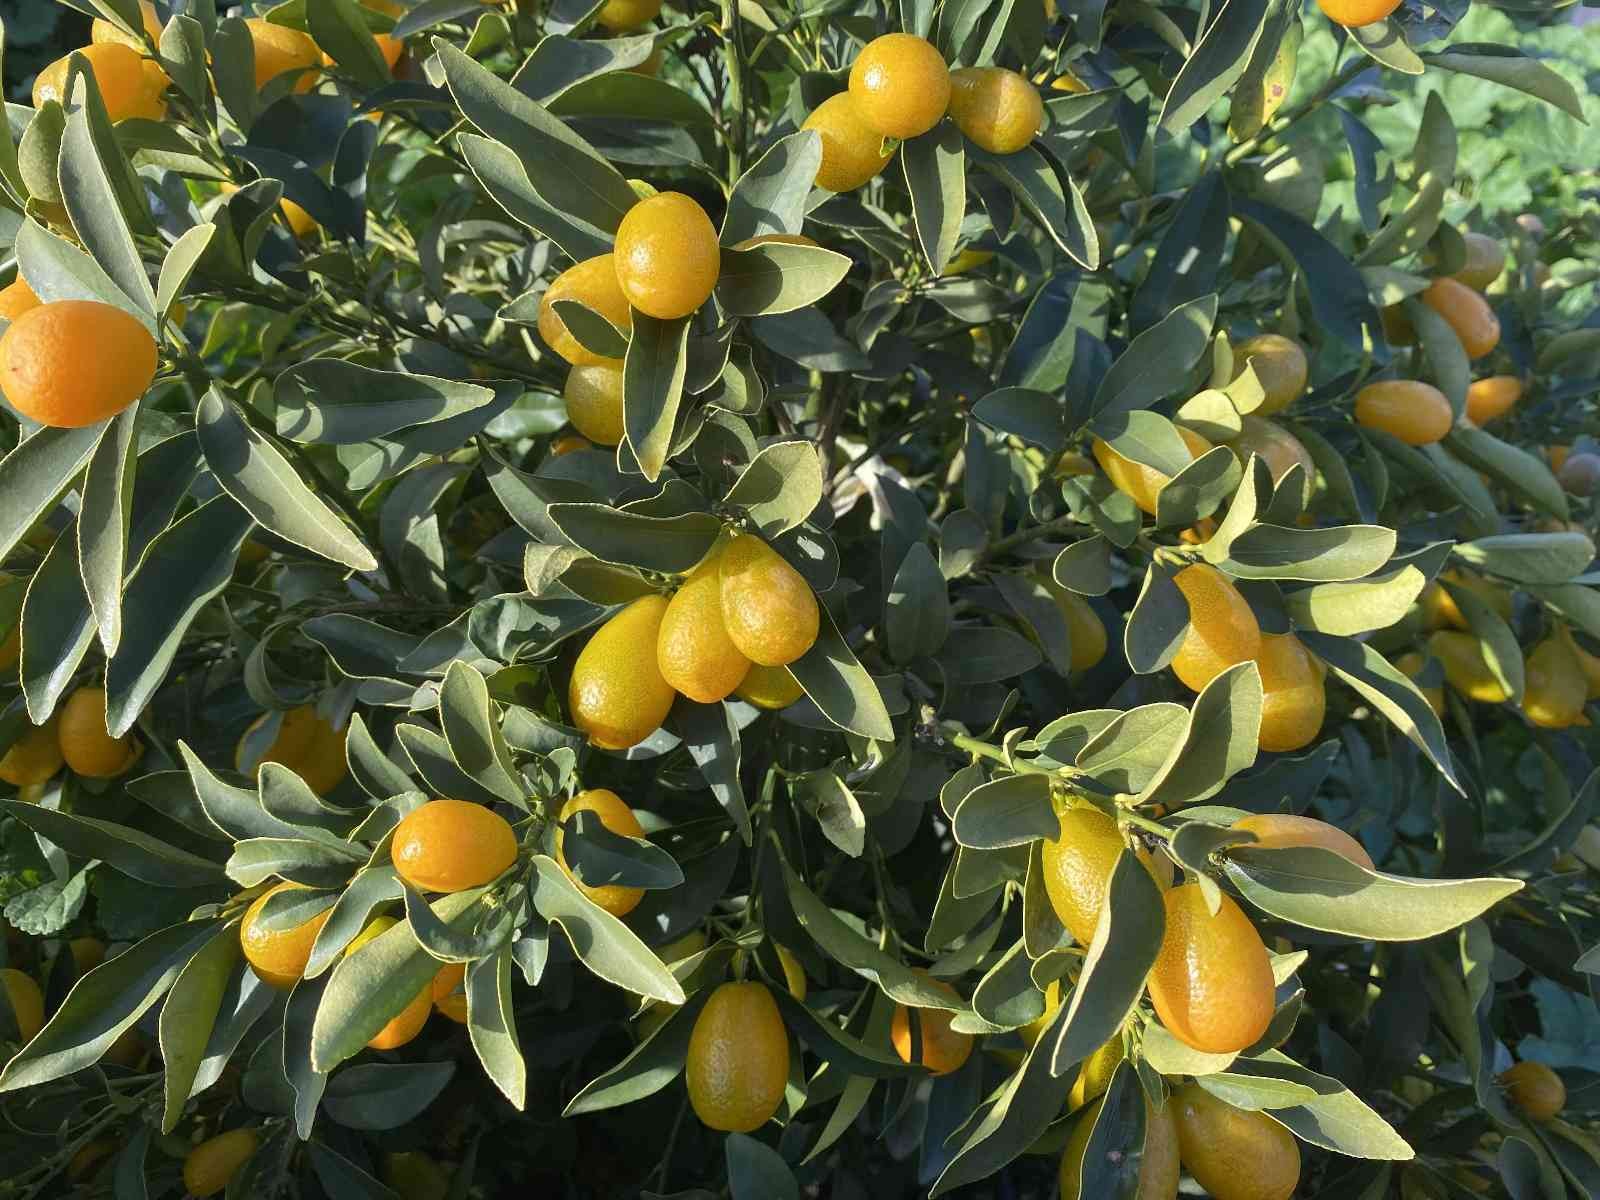 “Altın portakal” kumkuat İzmir’de üretilmeye başlandı #izmir